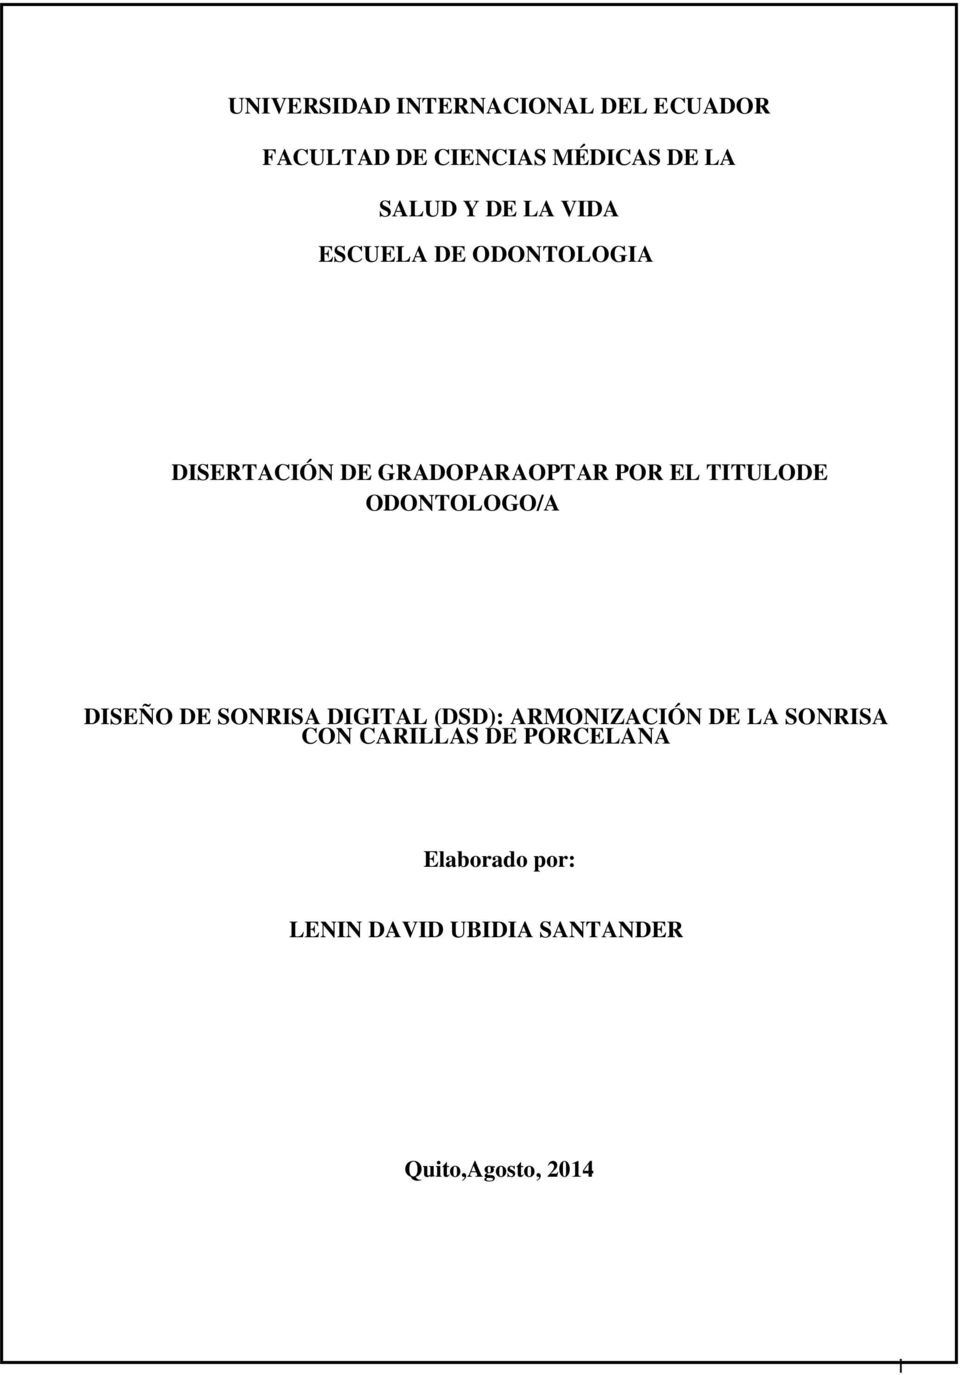 ODONTOLOGO/A DISEÑO DE SONRISA DIGITAL (DSD): ARMONIZACIÓN DE LA SONRISA CON